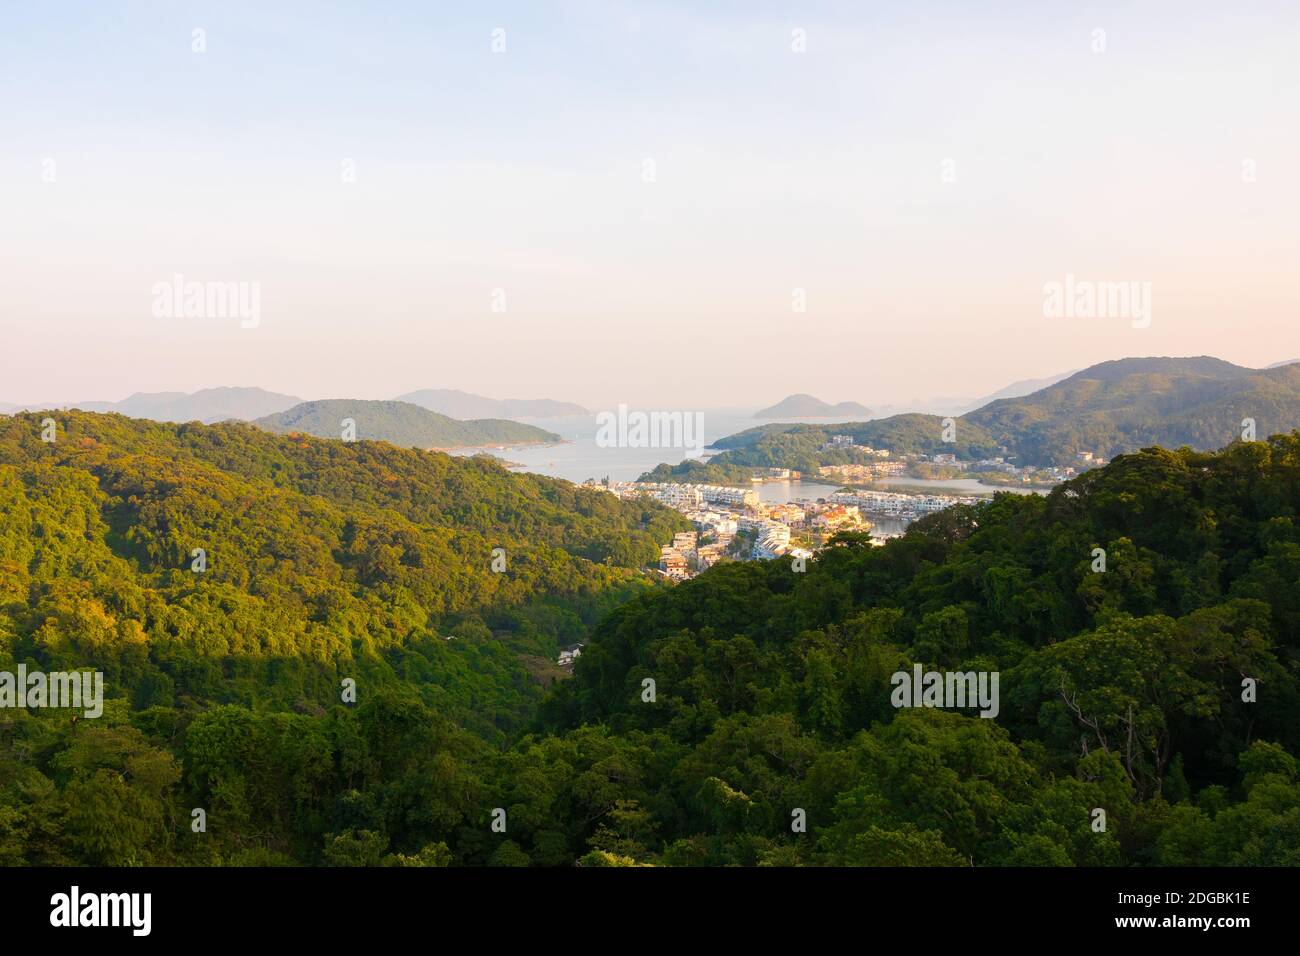 Vista di Sai Kung (nuovi territori), Hong Kong, Asia. Le isole HK possono essere viste sullo sfondo. Bellissimo paesaggio cinese in una giornata soleggiata e limpida. Foto Stock